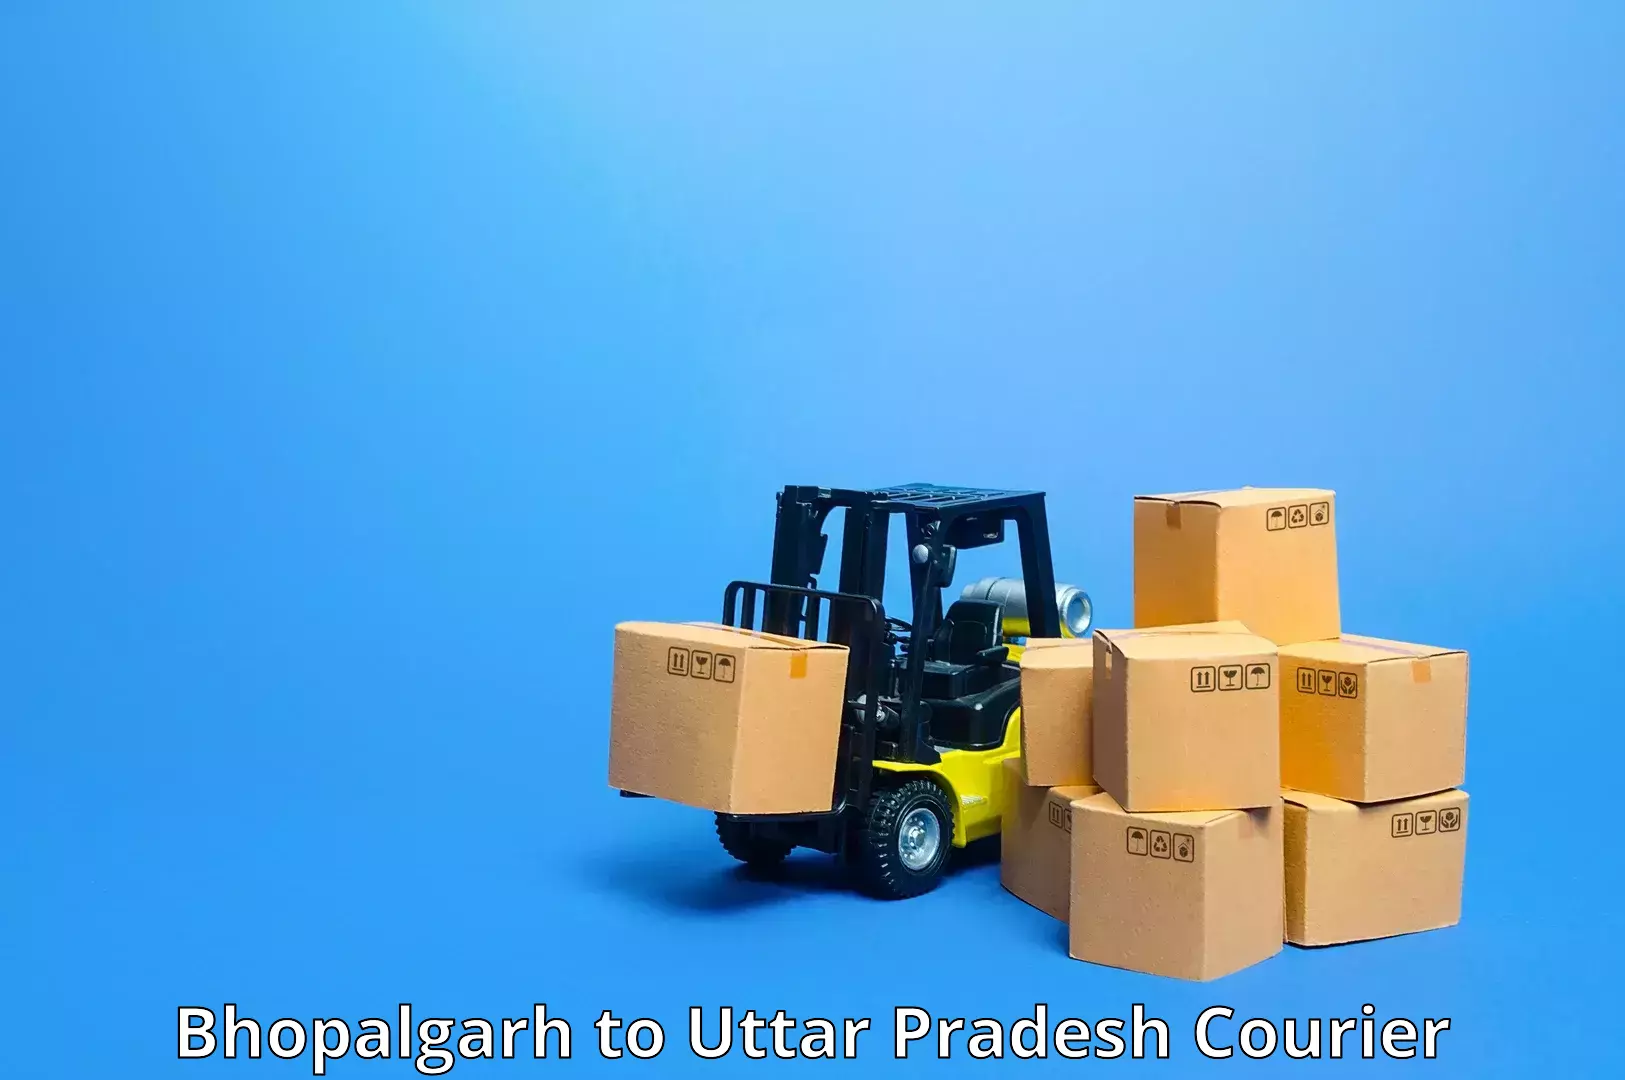 Tech-enabled shipping Bhopalgarh to Pihani